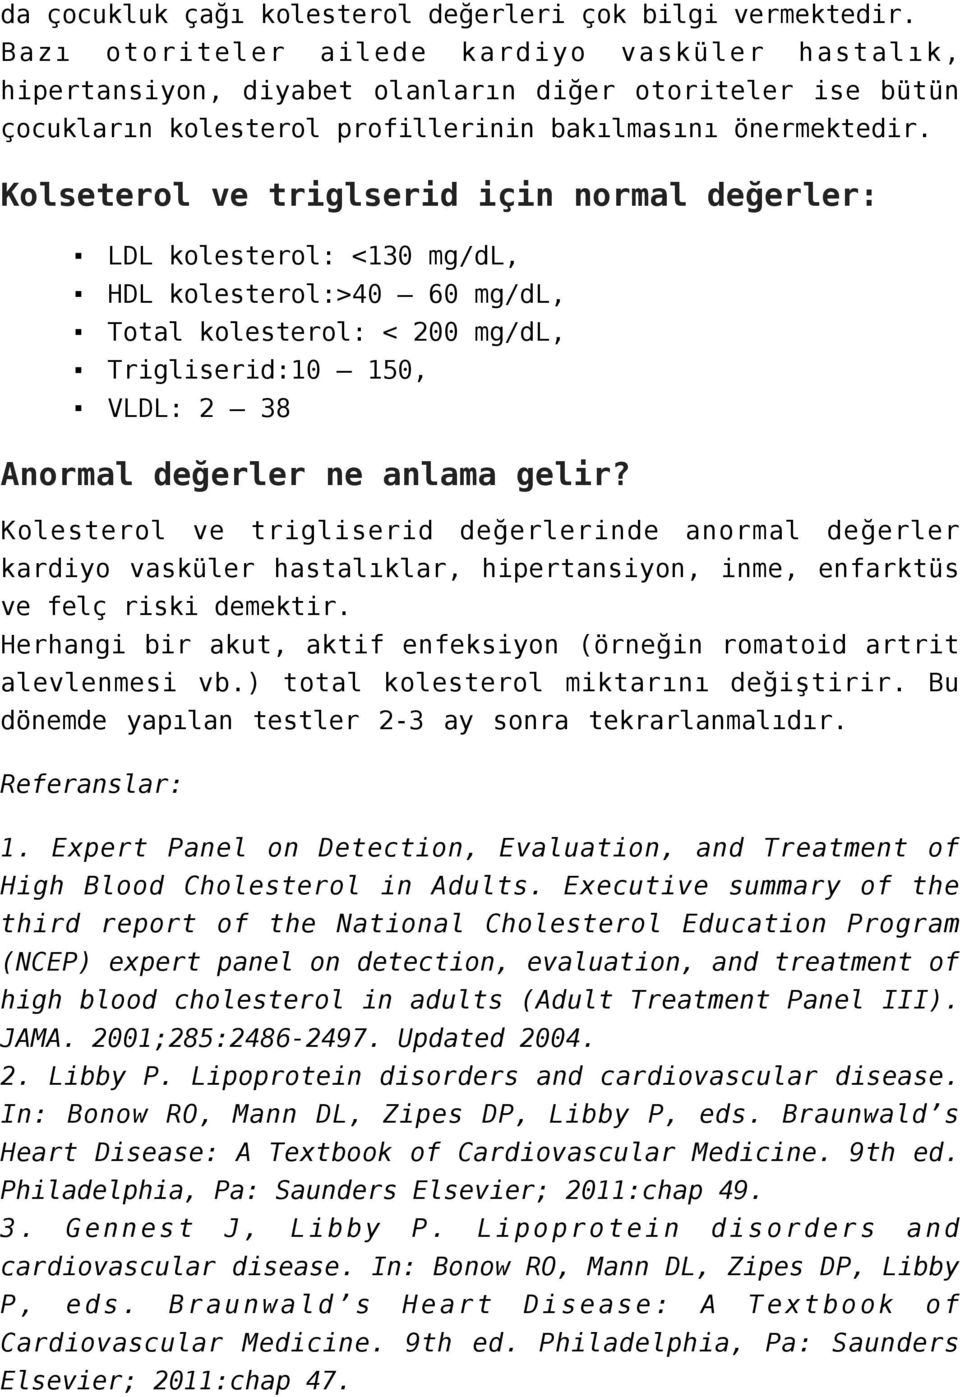 Kolseterol ve triglserid için normal değerler: LDL kolesterol: <130 mg/dl, HDL kolesterol:>40 60 mg/dl, Total kolesterol: < 200 mg/dl, Trigliserid:10 150, VLDL: 2 38 Anormal değerler ne anlama gelir?